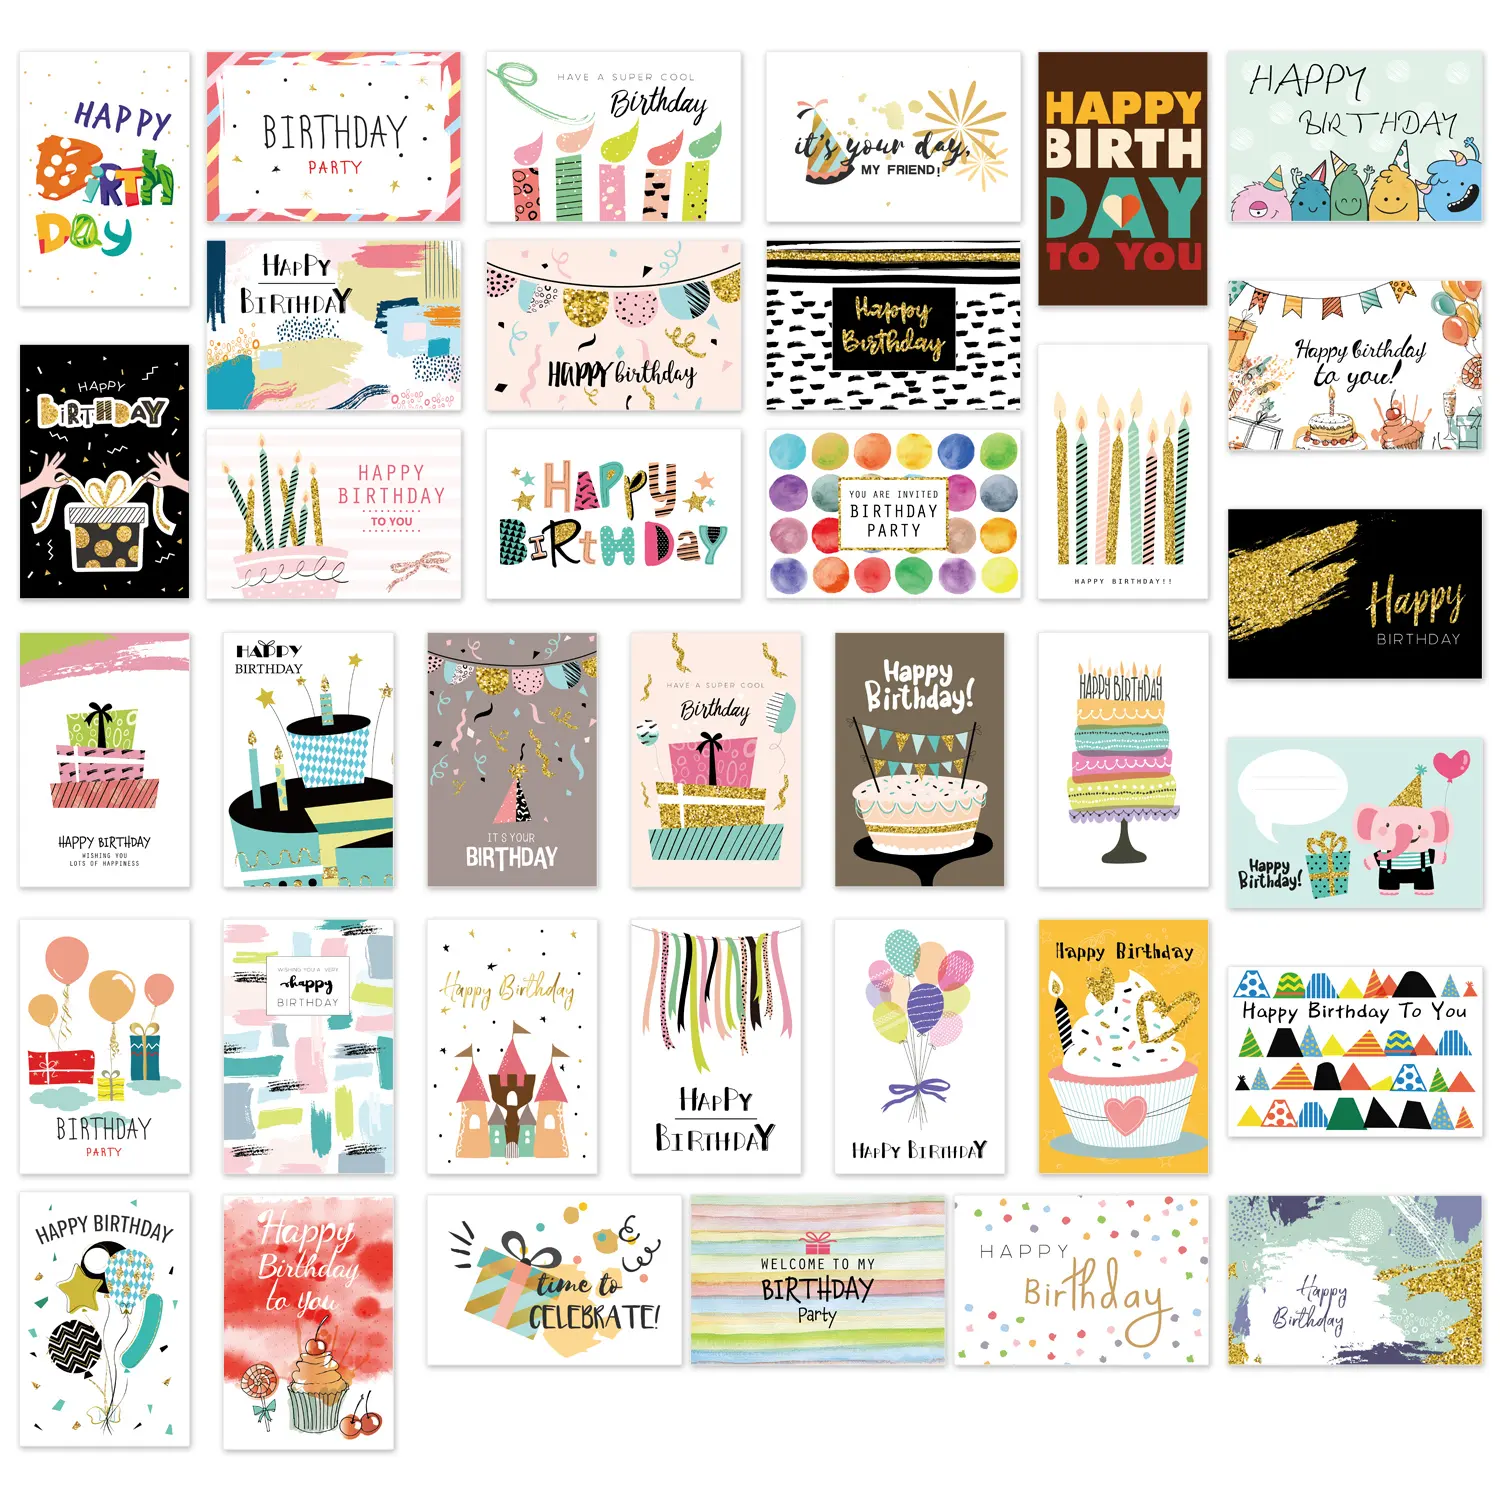 36 تصاميم فريدة من نوعها بطاقات عيد ميلاد سعيد السائبة كبيرة متنوعة تحية الملاحظات مع المغلفات والملصقات سميكة مجموعة من البطاقات